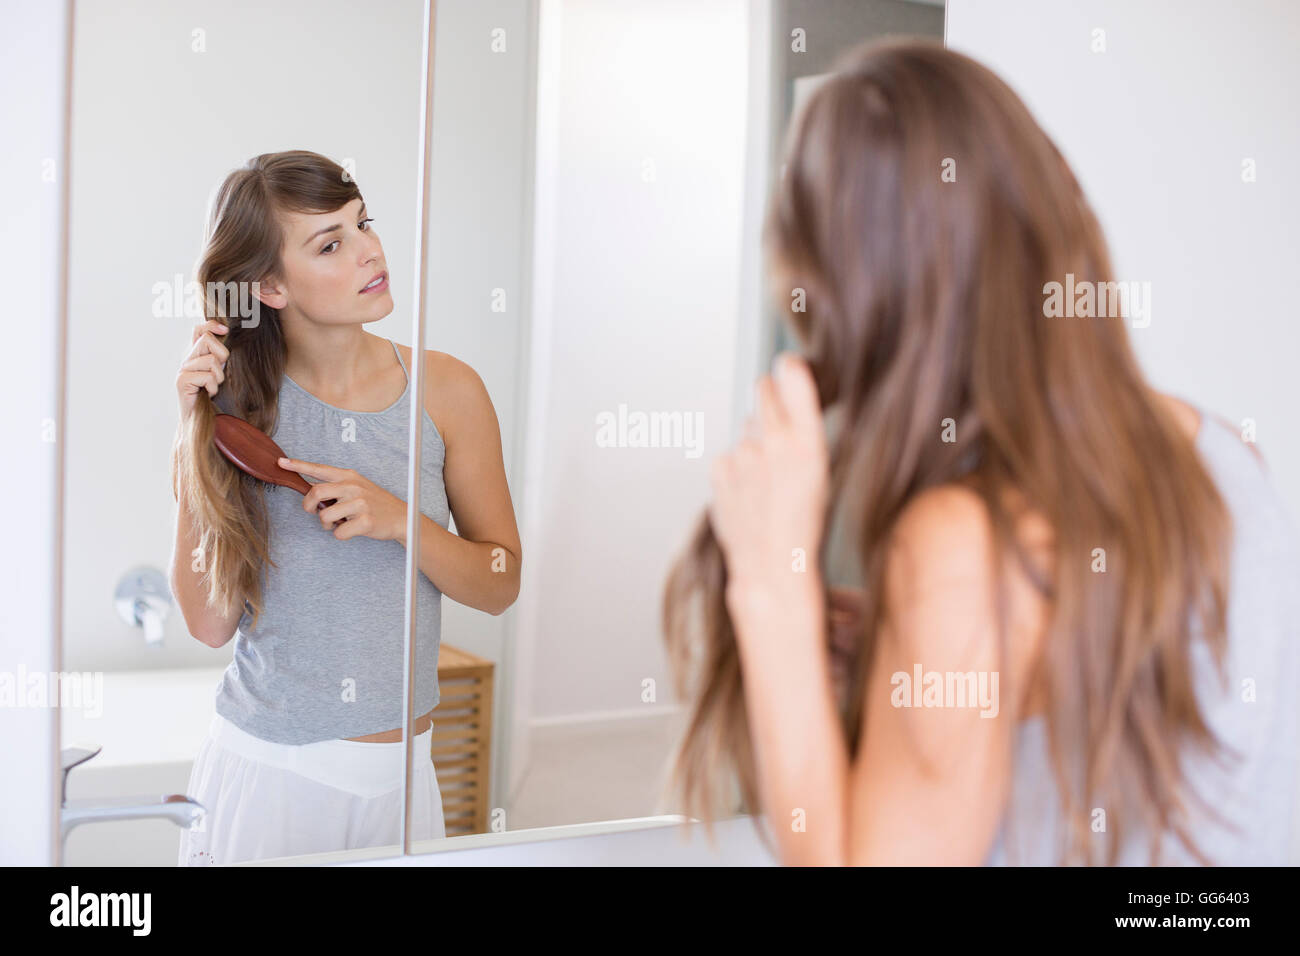 Почему в зеркале видно. Женщина перед зеркалом волосы. Девушка в зеркале. Зеркало девушка с волосами. Девушка причесывает волосы перед зеркалом.